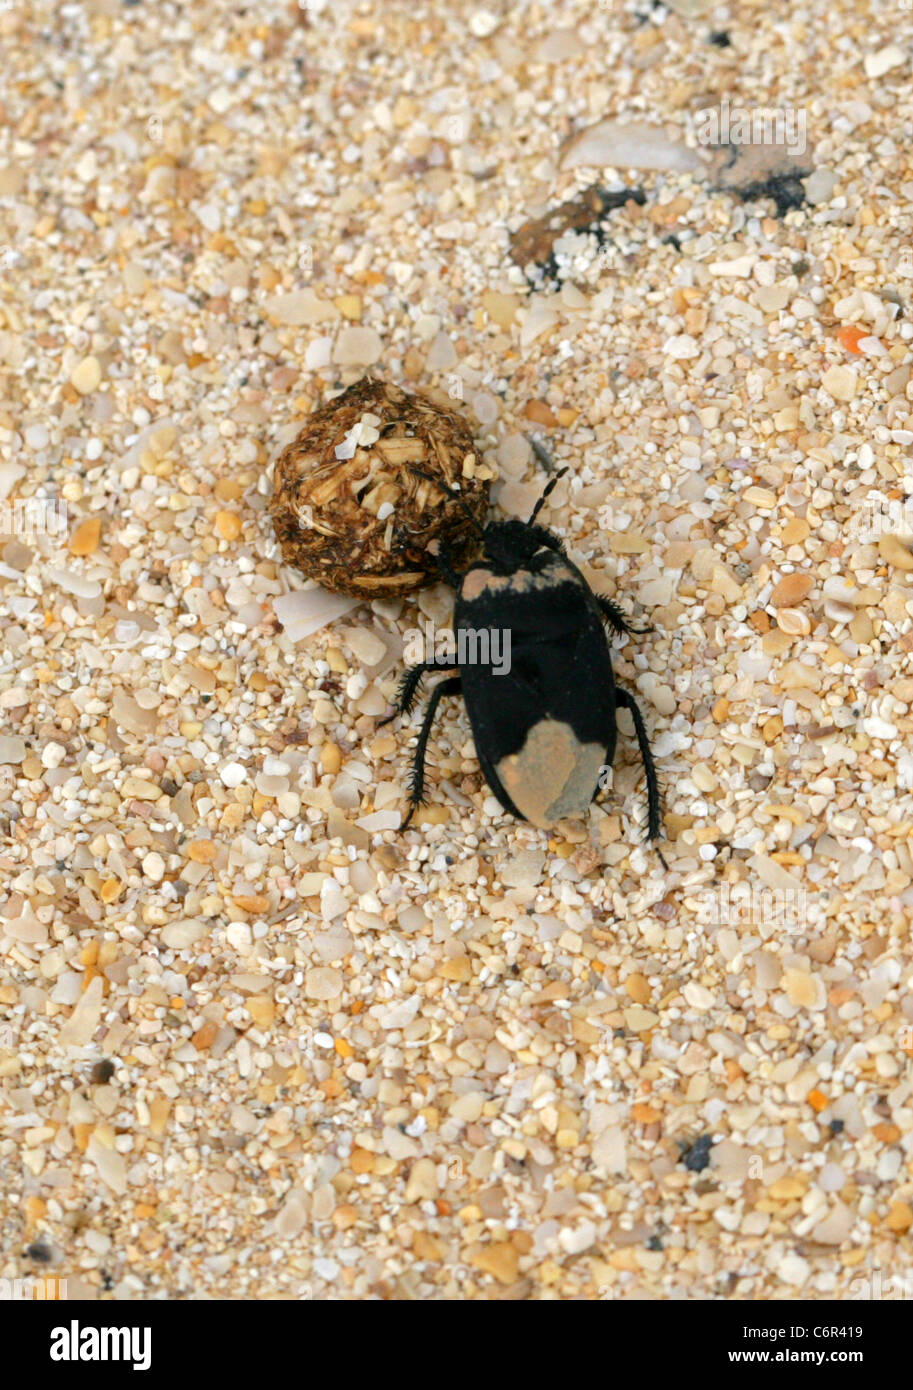 Scavando Bug, Cydnus aterrimus, Cydnidae, Heteroptera, Hemiptera. Correlejo Riserva Naturale, Fuerteventura, Isole Canarie. Foto Stock